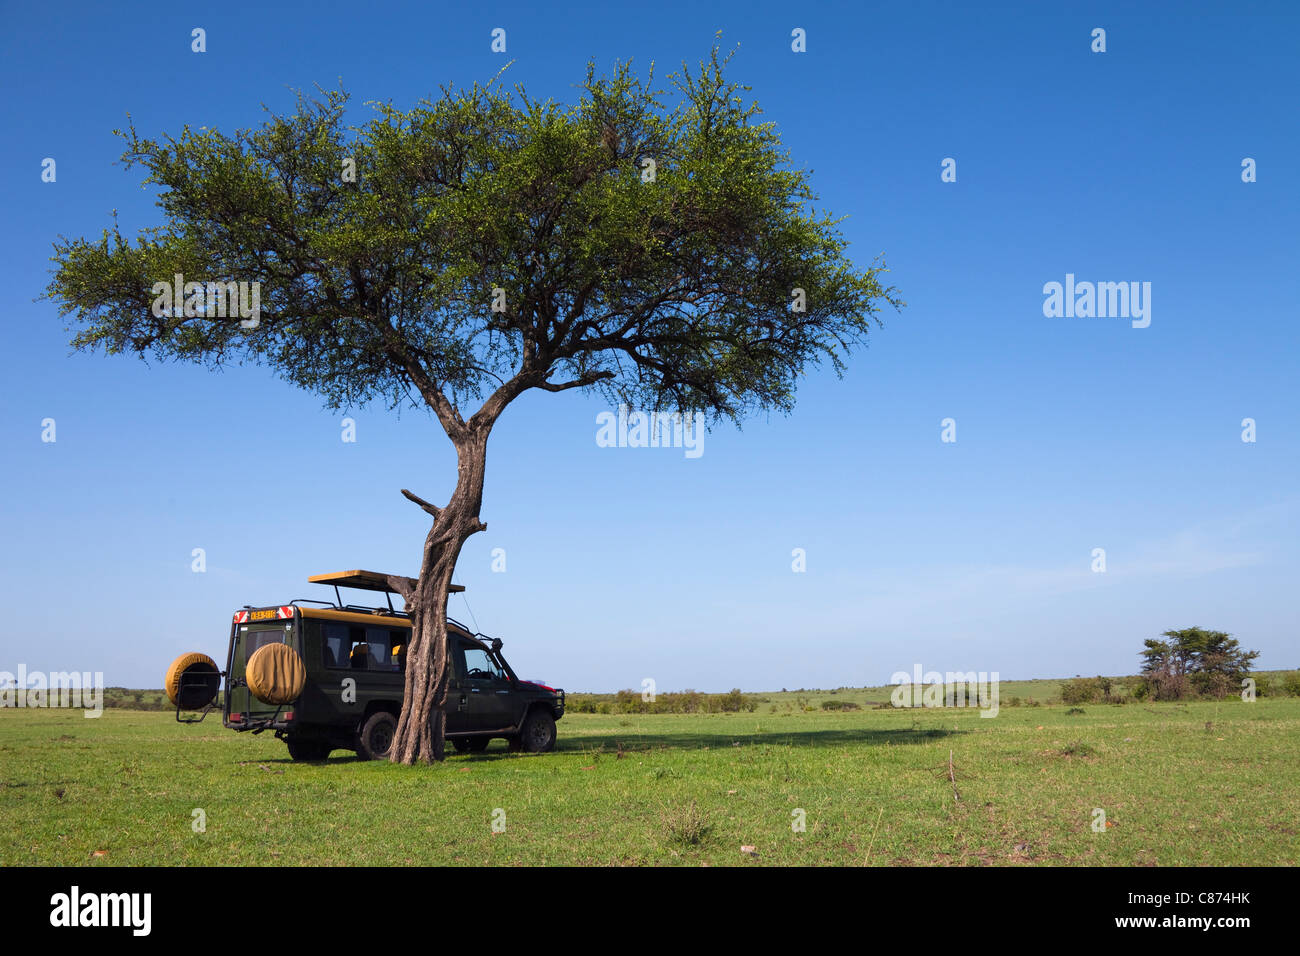 Safari Vehicle by Acacia Tree, Masai Mara National Reserve, Kenya Stock Photo